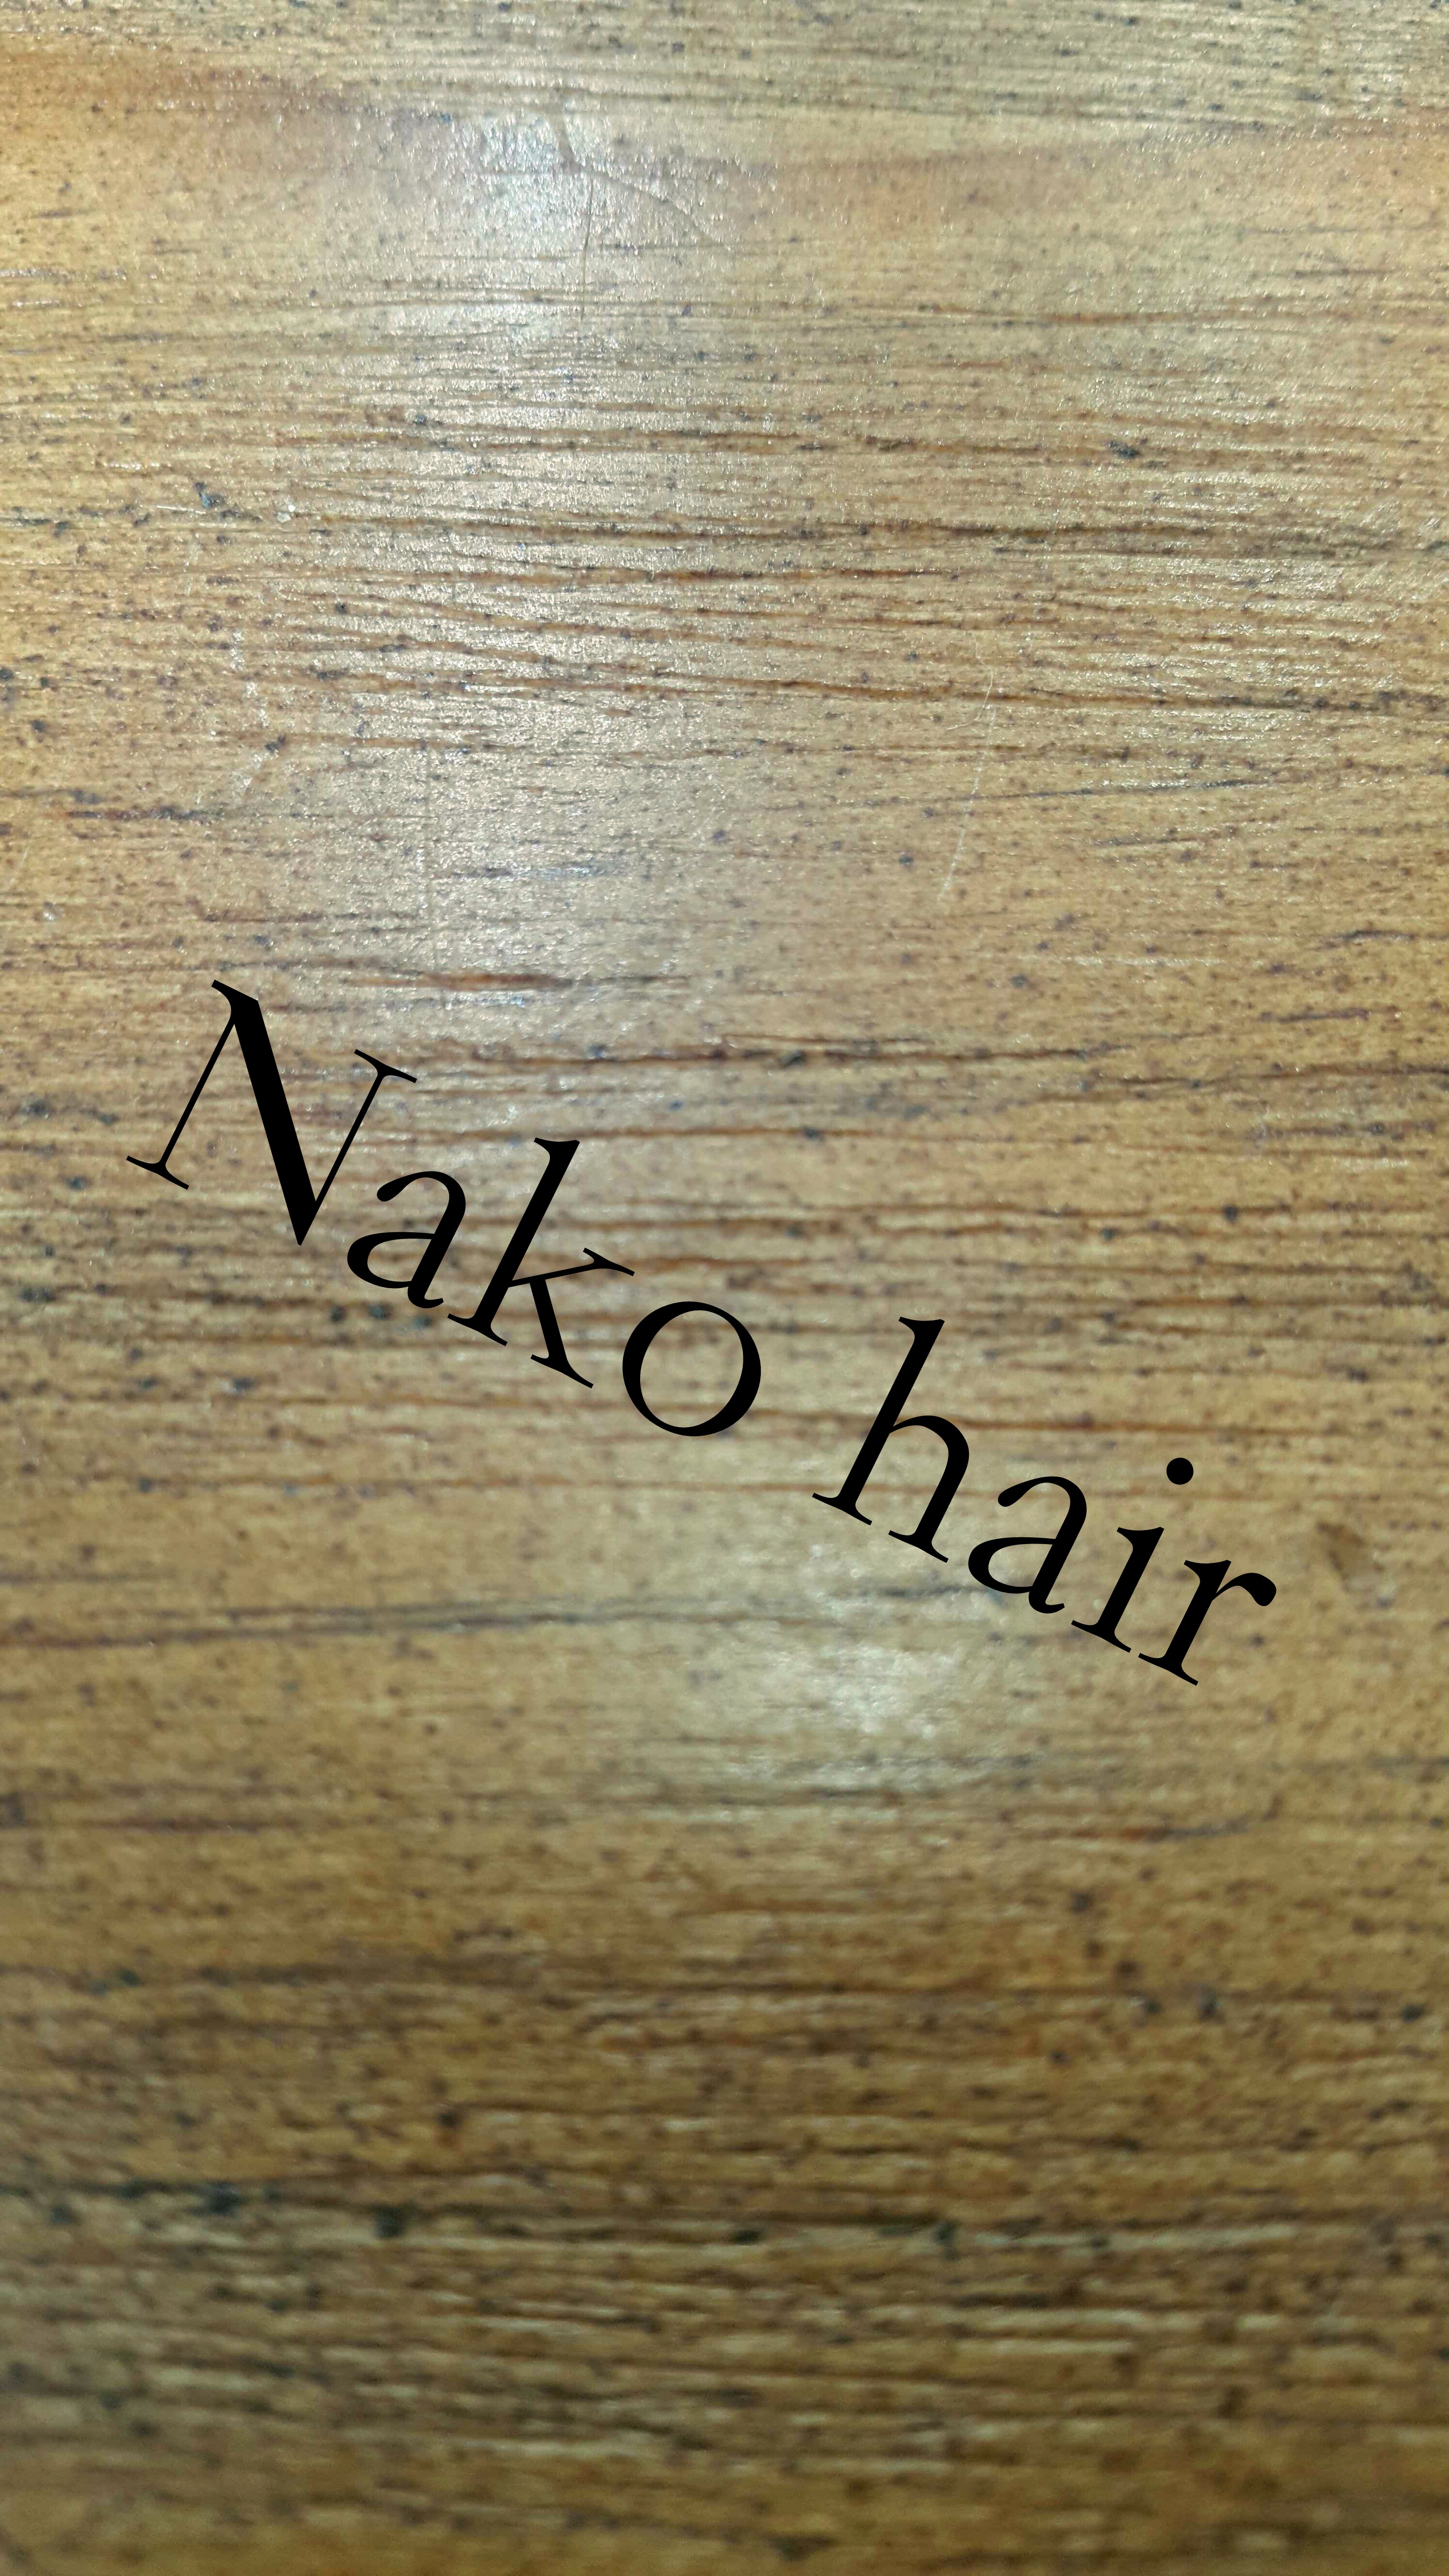 髮型師: Nako yeung